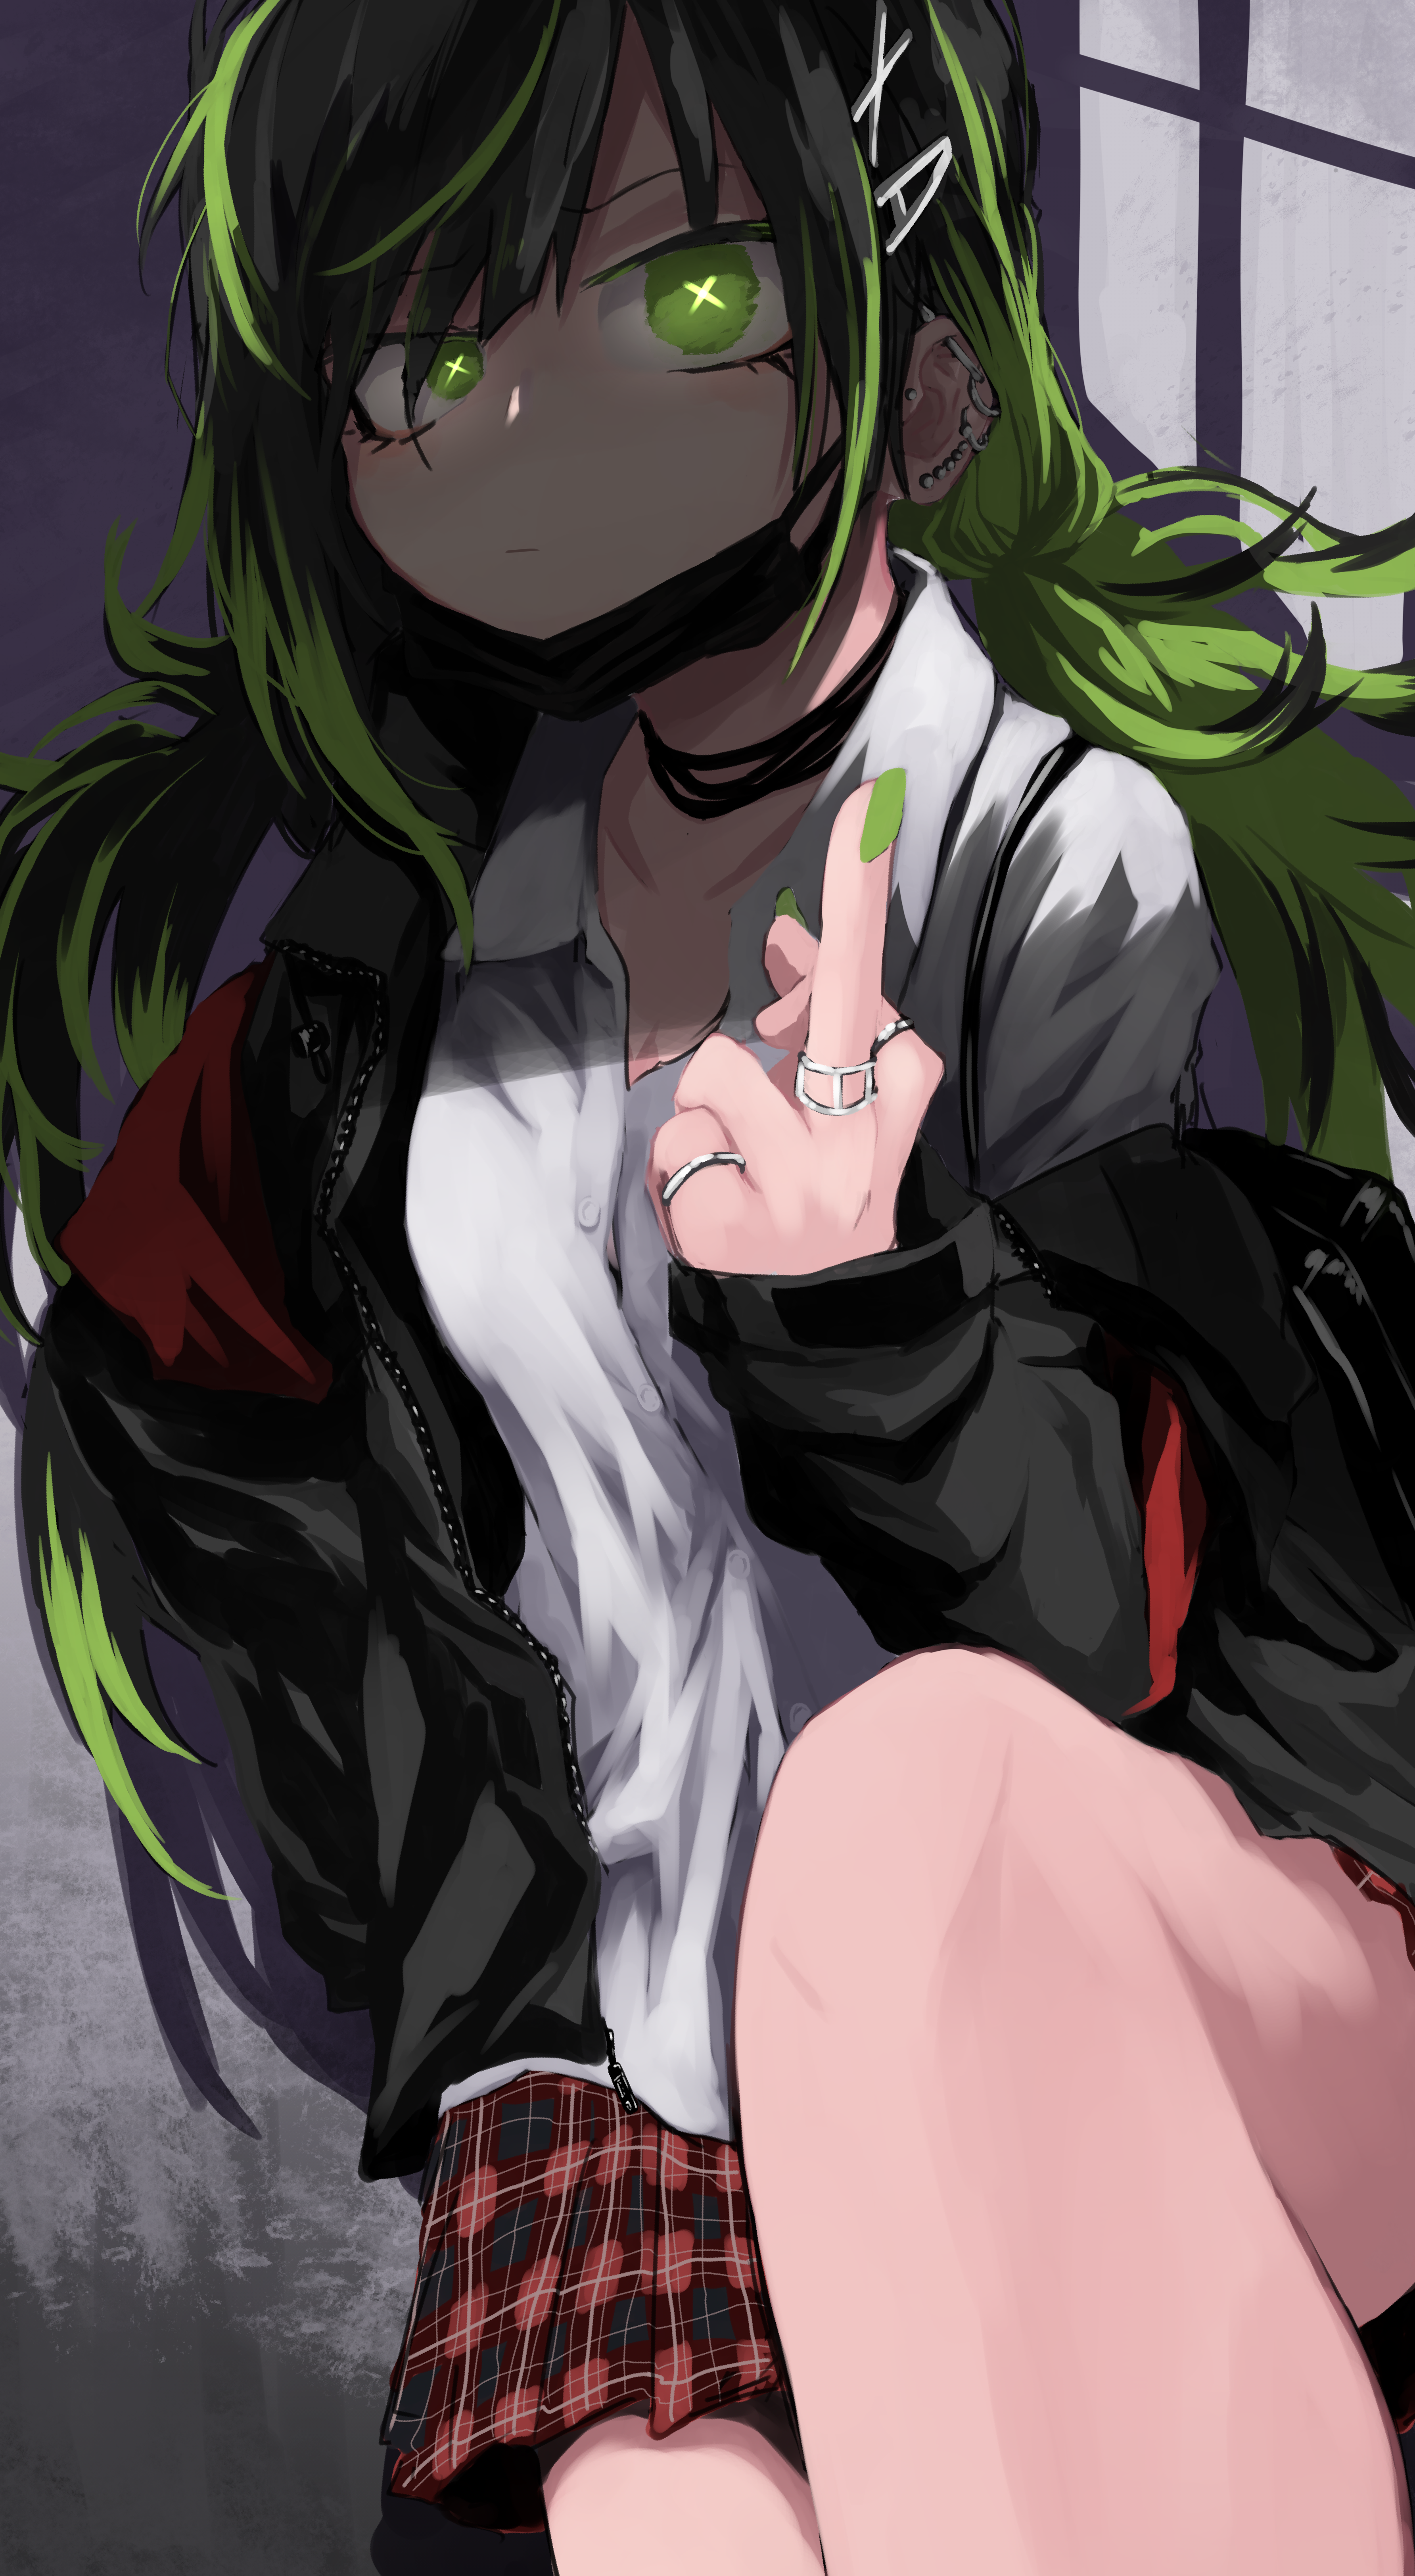 Anime 3568x6495 anime anime girls digital art artwork 2D portrait display green eyes green hair long hair middle finger Kamatama